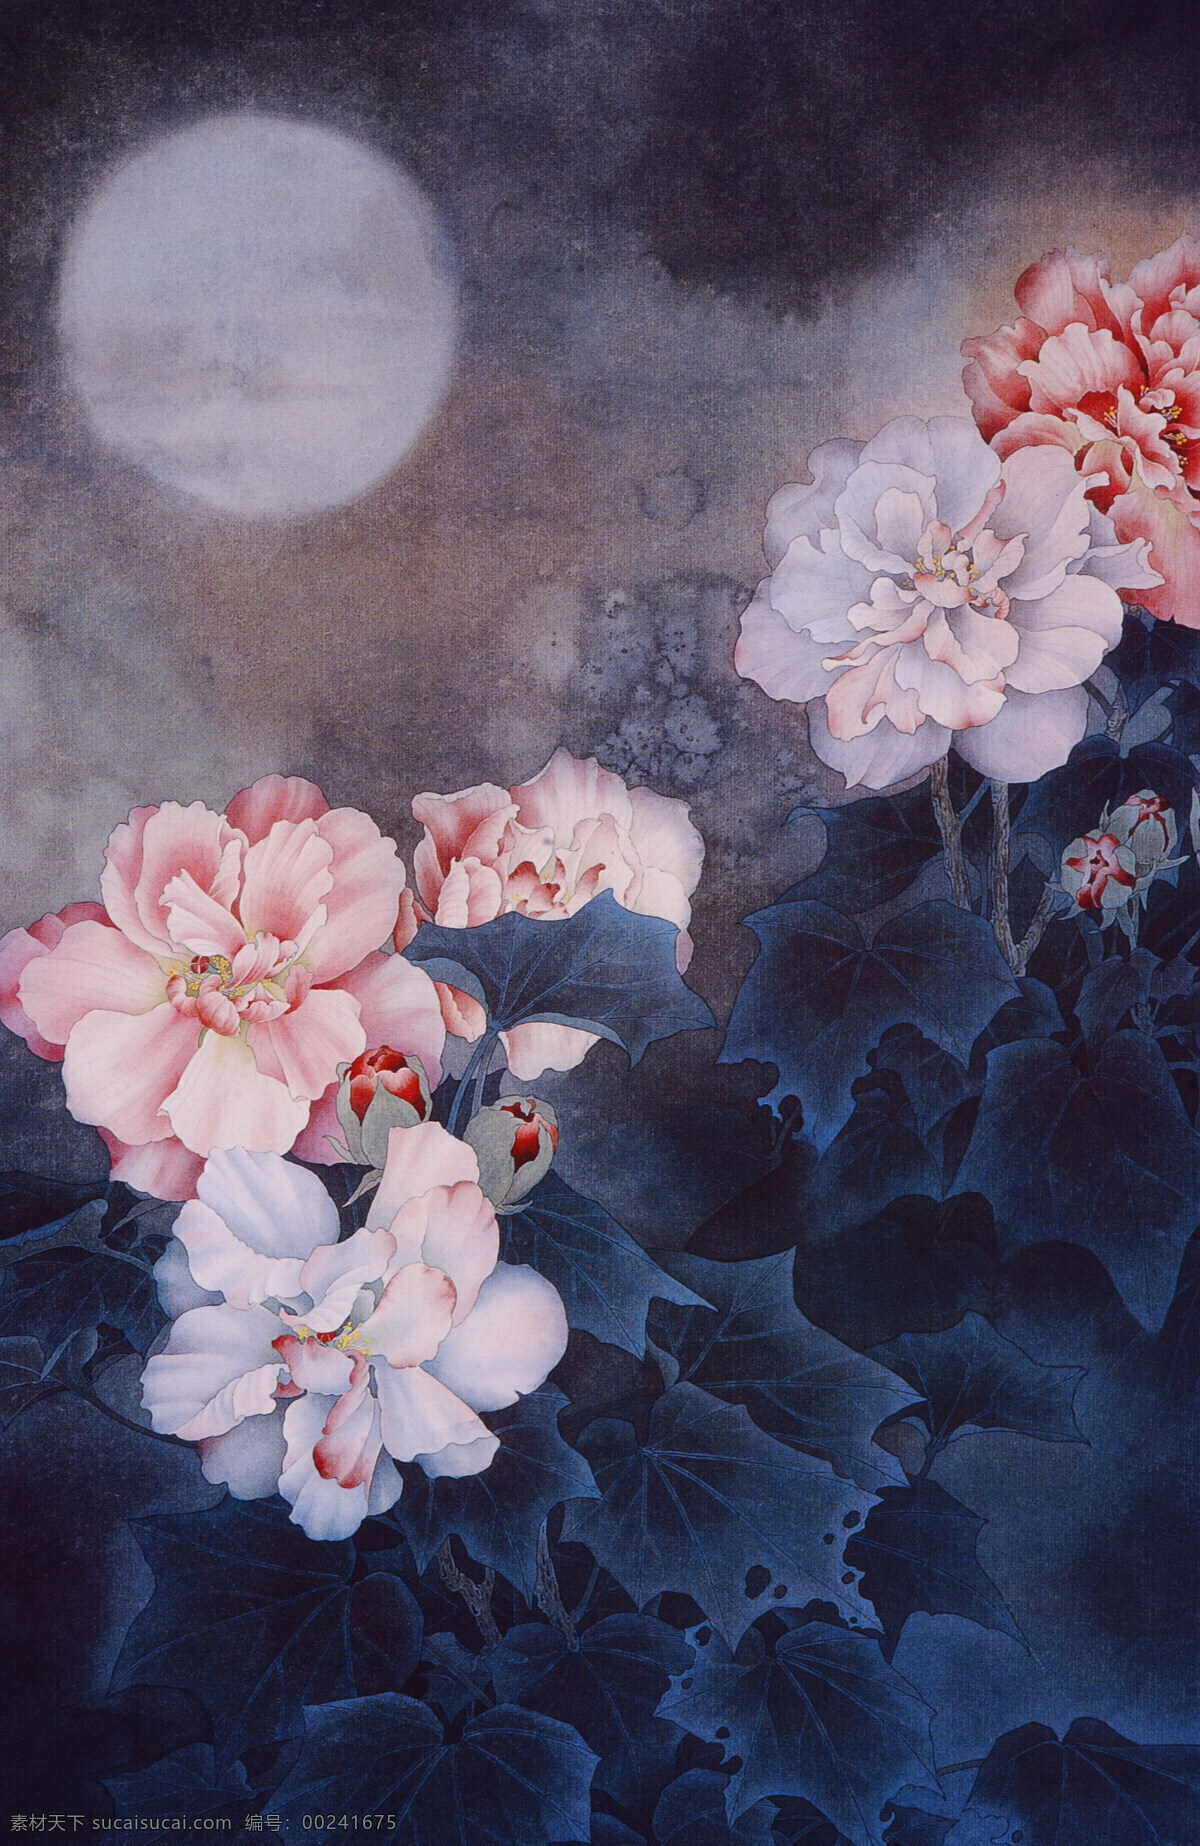 夜晚 牡丹 国画 植物 中国画 水墨画 书画文字 文化艺术